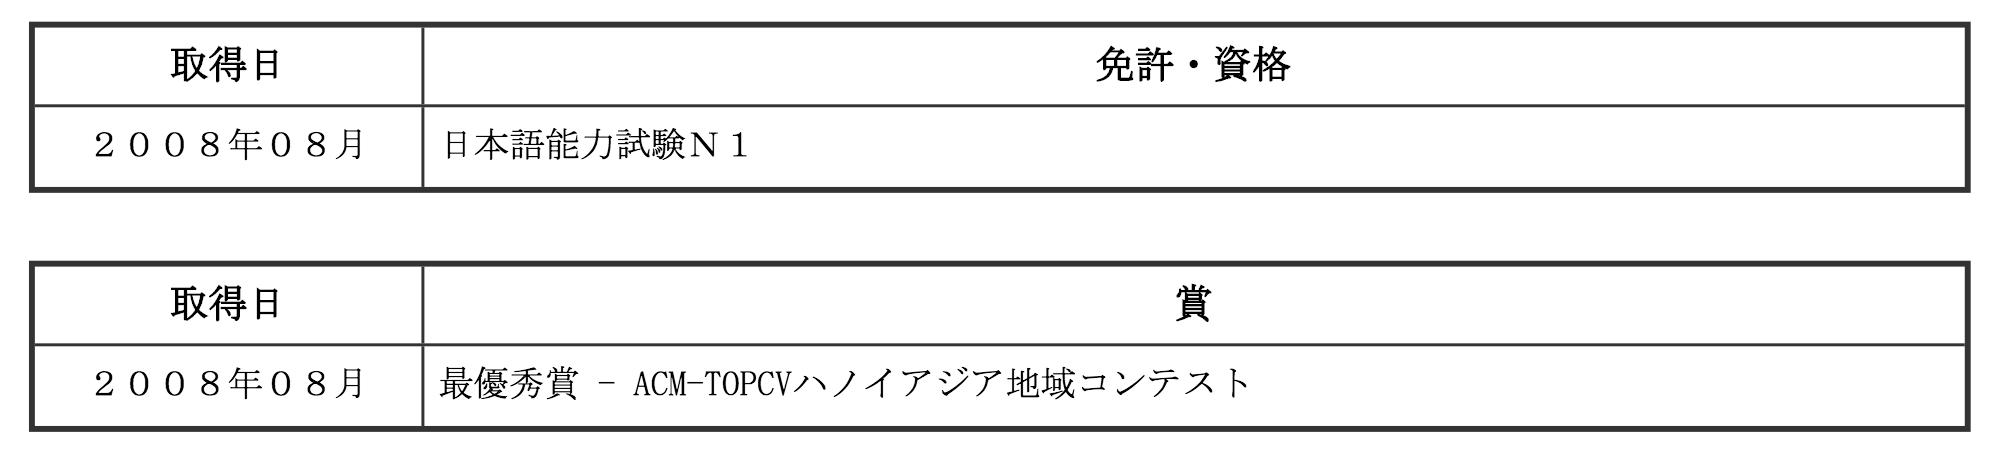 Mục bằng cấp, chứng chỉ trong CV tiếng Nhật